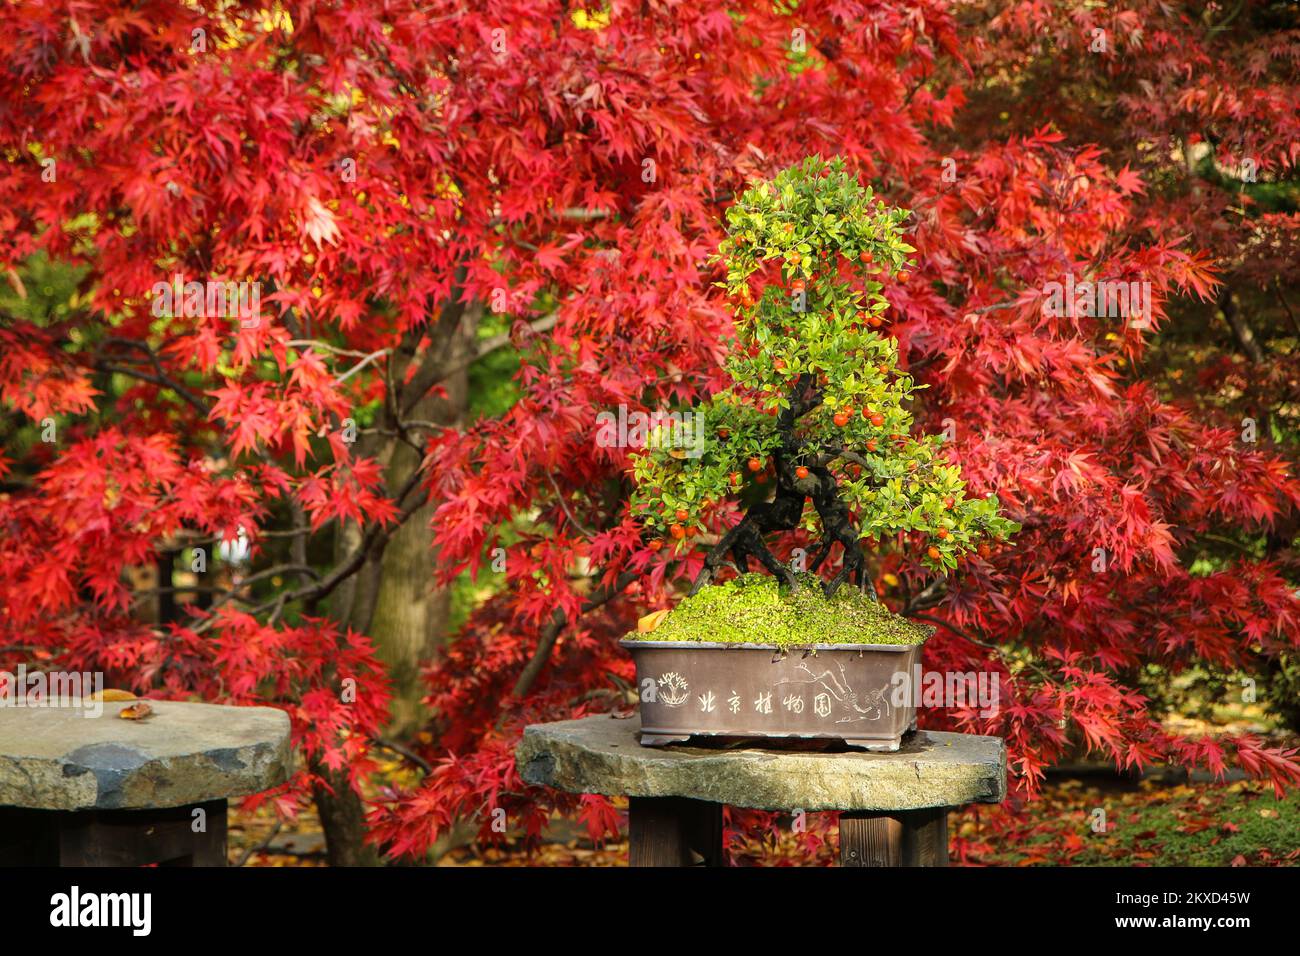 Der grüne Bonsai steht im Garten vor den roten Blättern eines Baumes. Der schöne Herbstkontrast des Laubs. Stockfoto